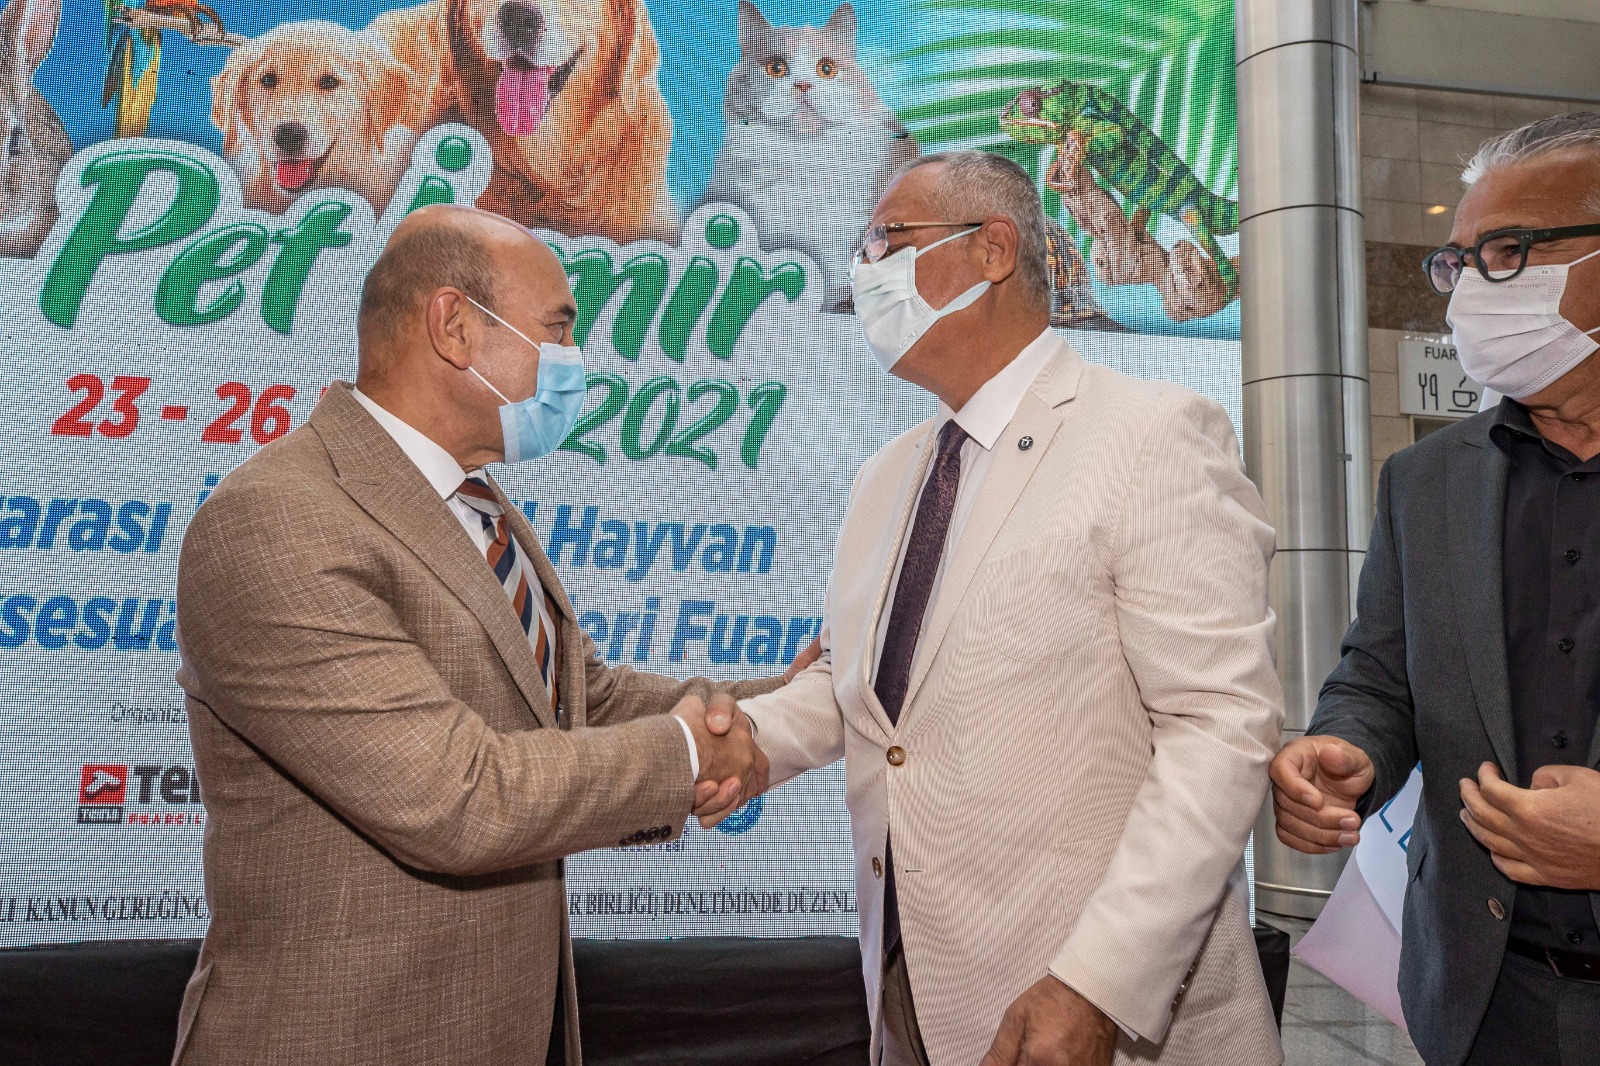 Başkan Soyer, Pet İzmir 2021’in açılışında konuştu: “Can dostlarımıza merhamet değil adalet borçluyuz”